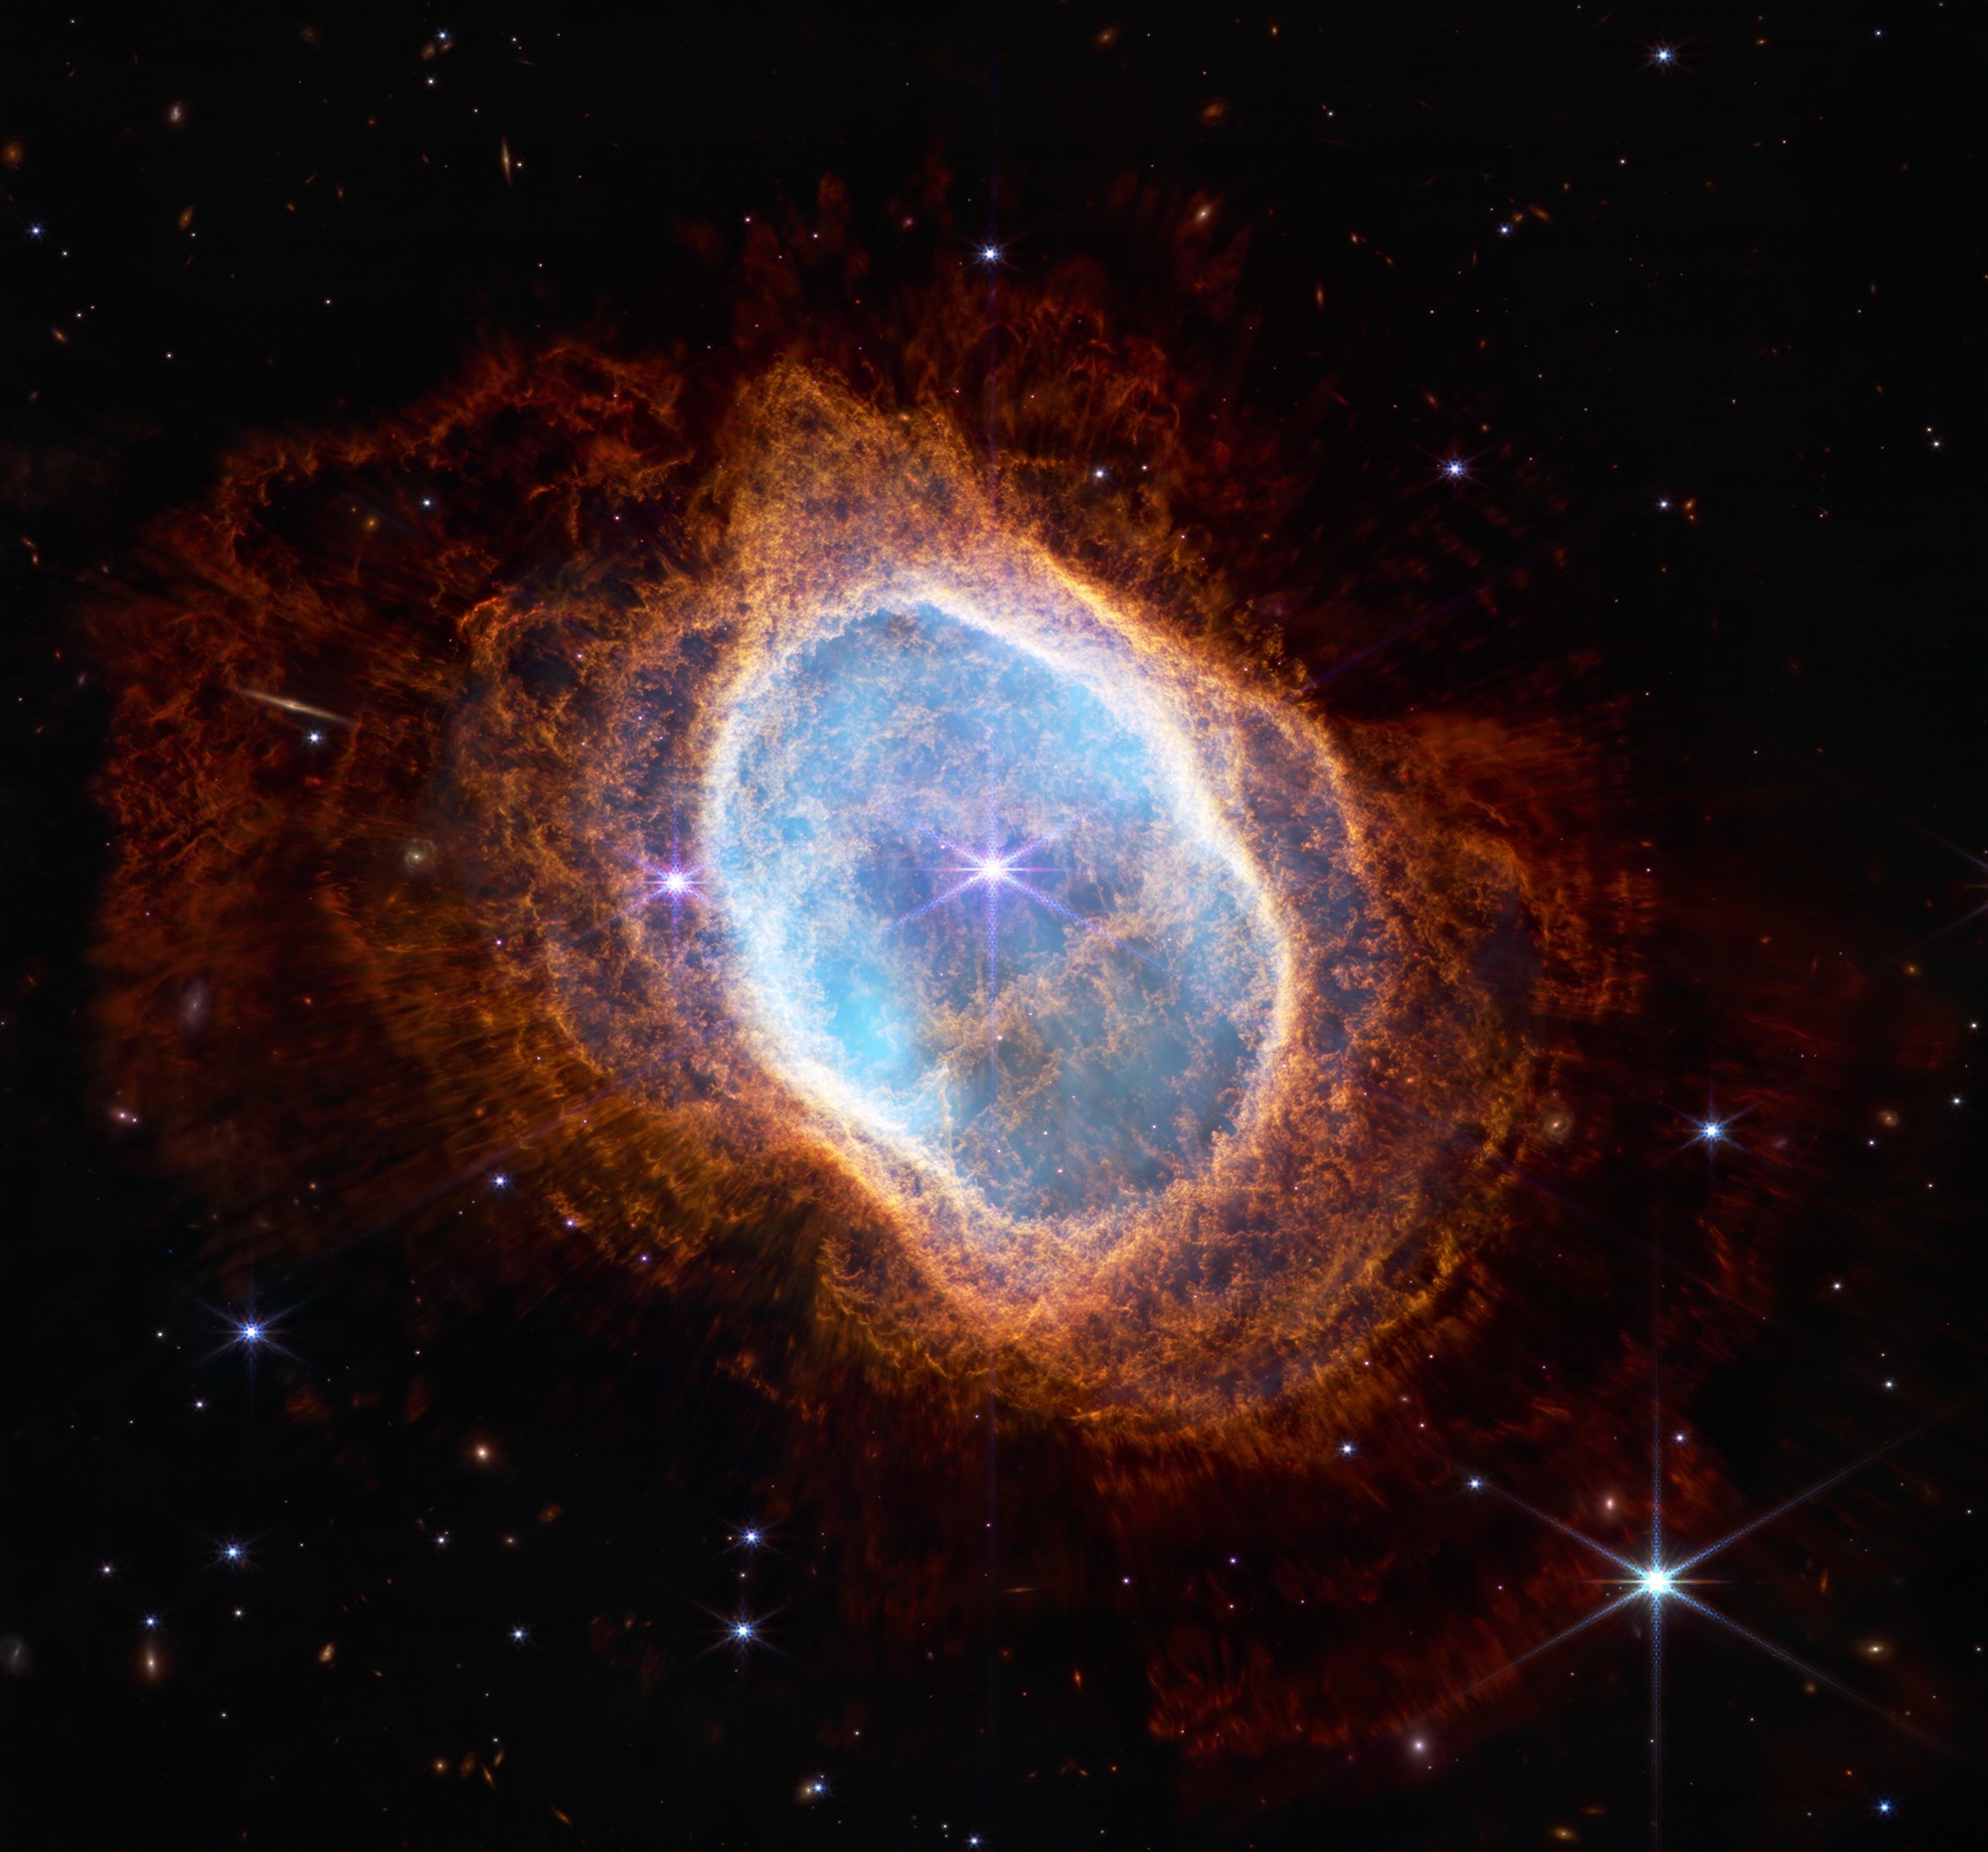 Nasas James Webb Telescope Captures Groundbreaking Images Of